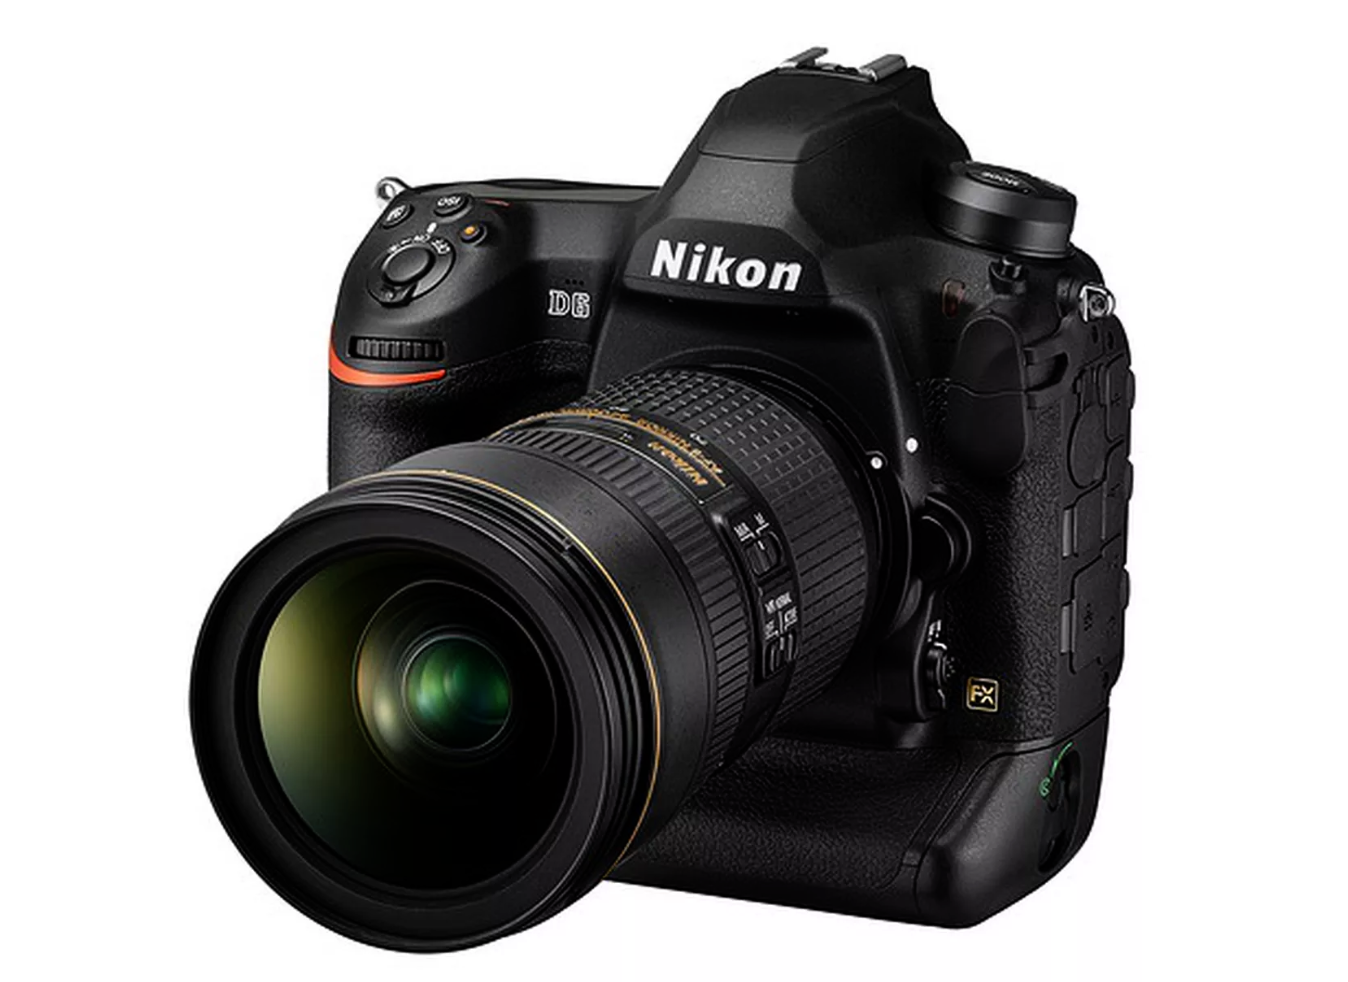 Invloedrijk Plateau schedel Nikon D6 is nieuwste spiegelreflexcamera voor professionals